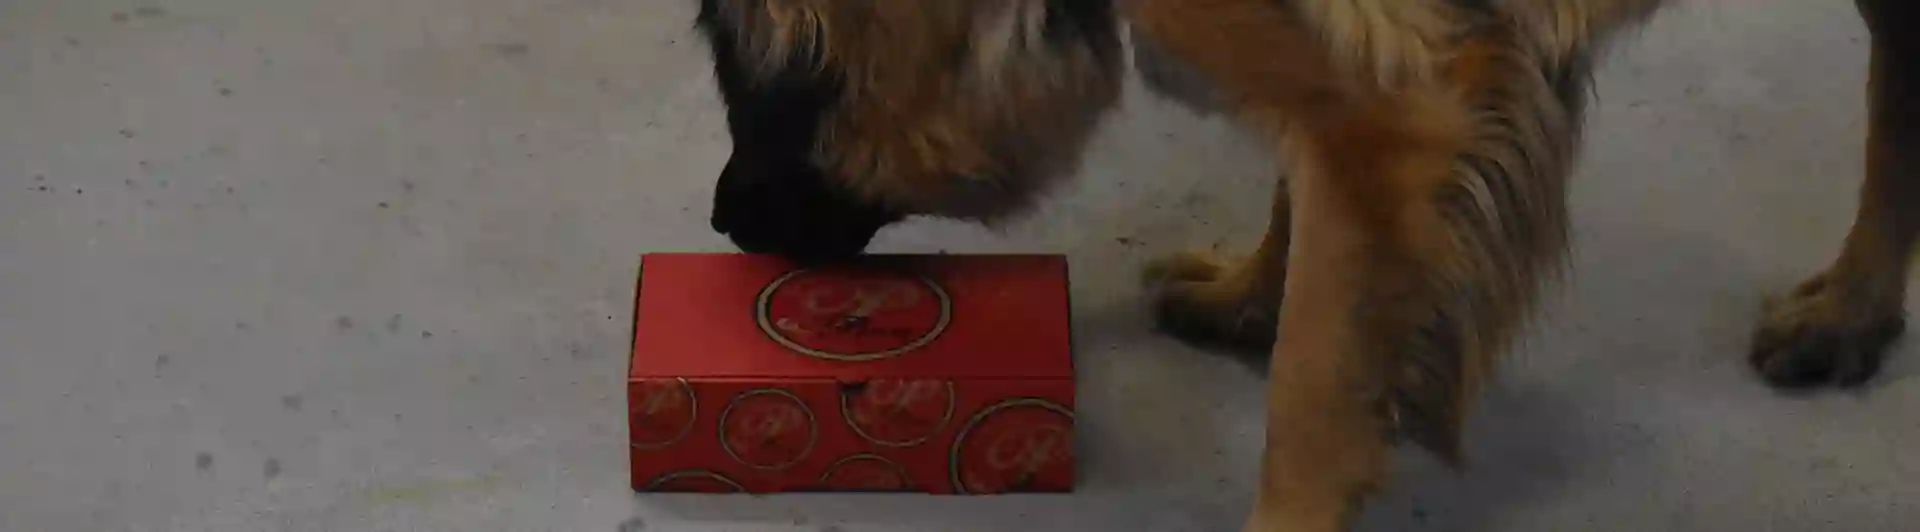 Leonbergern Mira nosar på en pizzakartong som innehåller doft av eukalyptus.